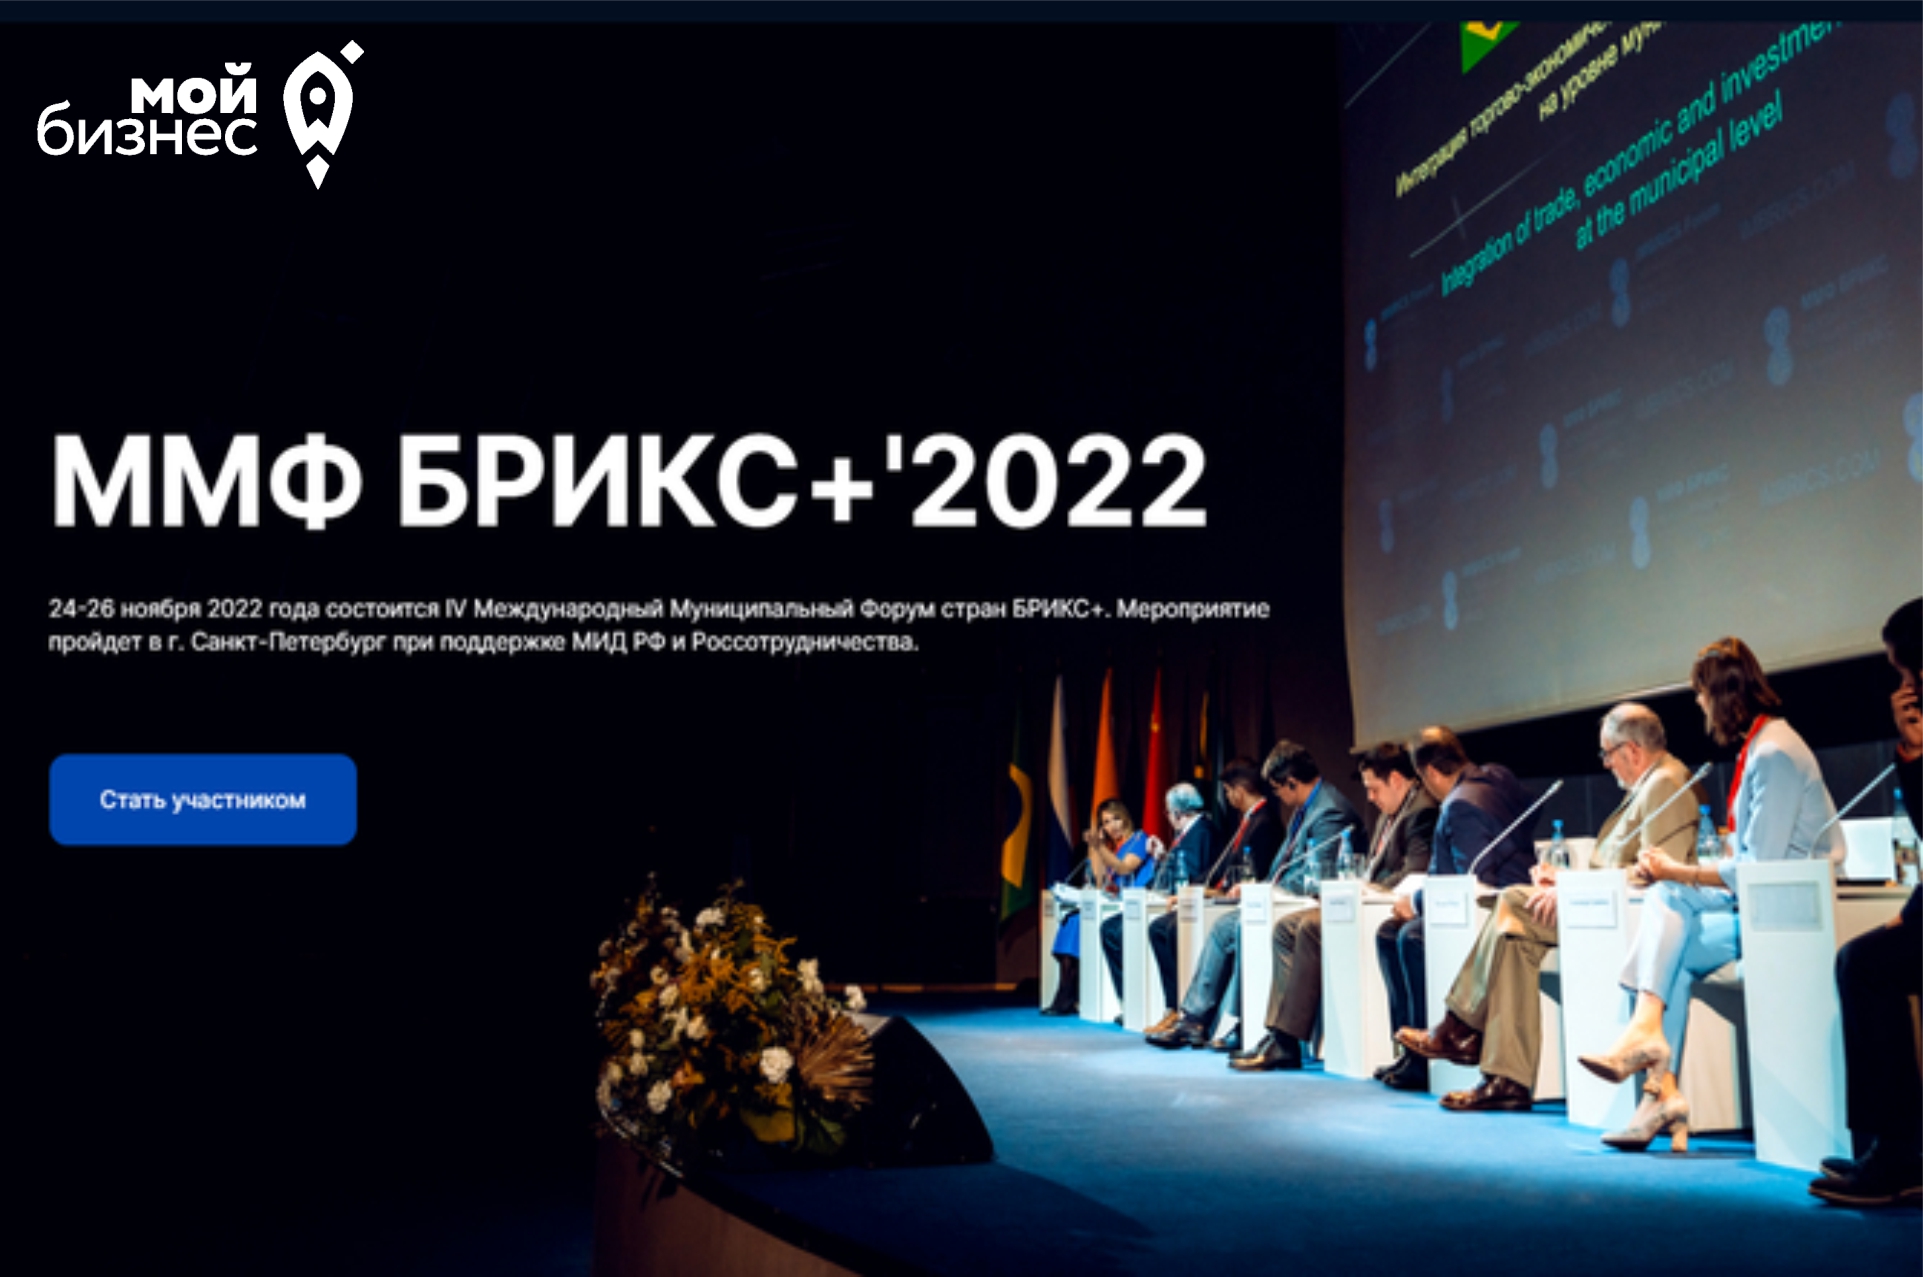 Волгоградских предпринимателей приглашают к участию в IV Международном муниципальном форуме стран БРИКС+.